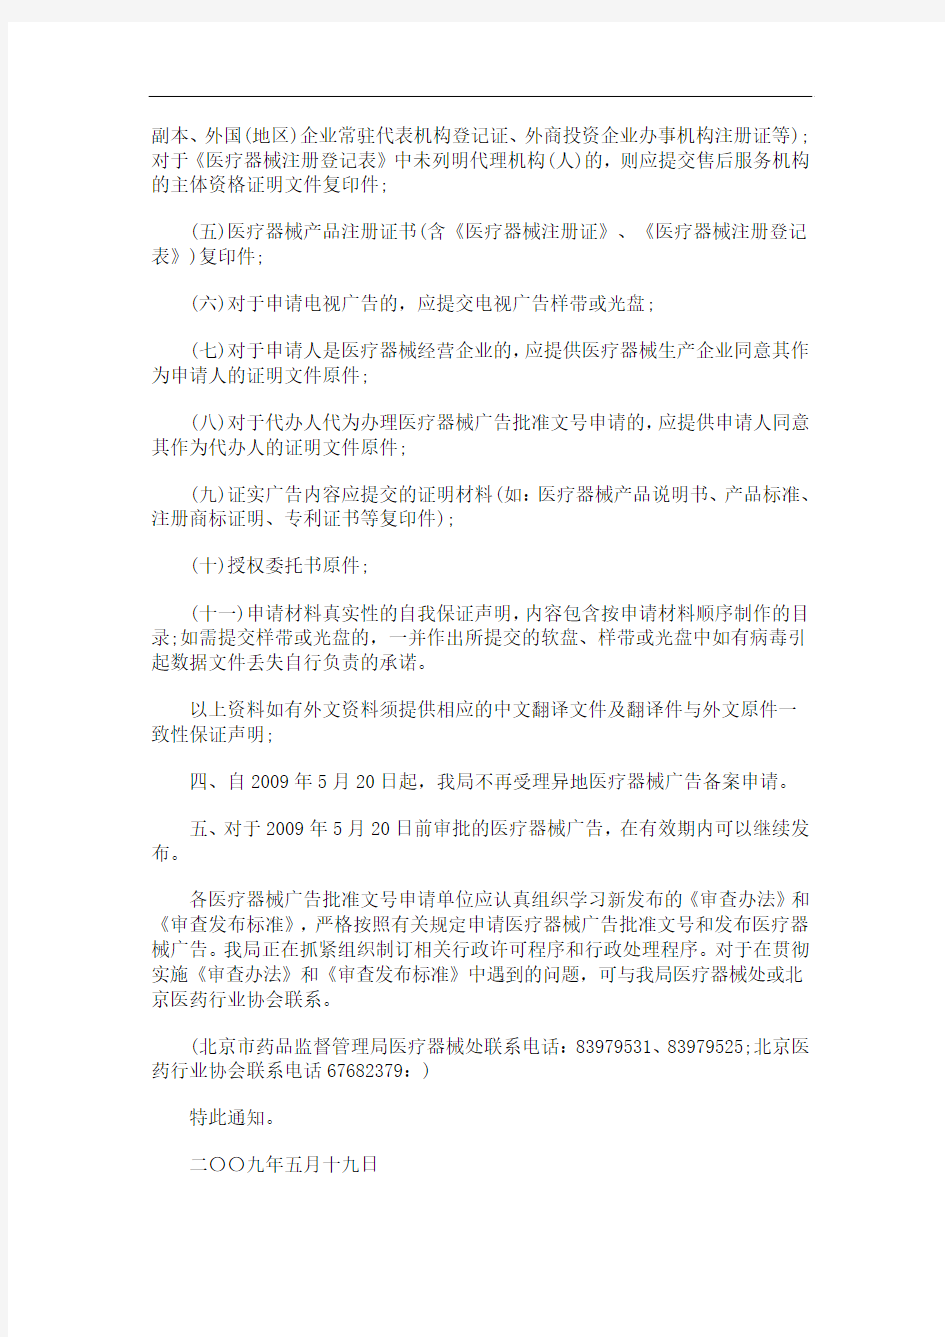 中国民族医疗广告审查办法发布标准的通知